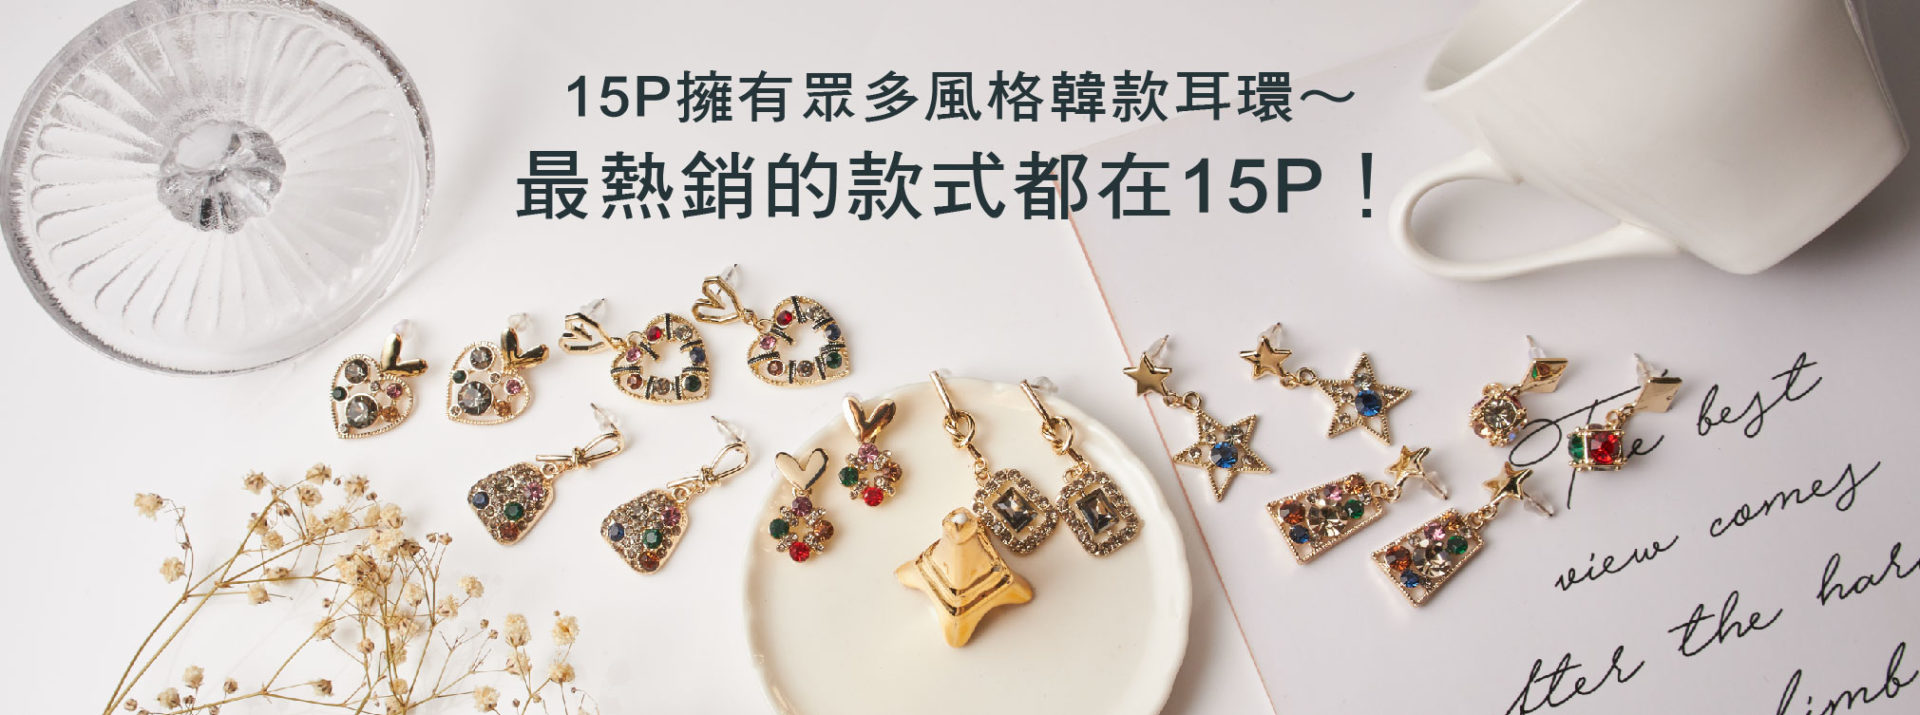 15P擁有眾多風格韓系耳環～ 最熱銷的款式都在15P發網